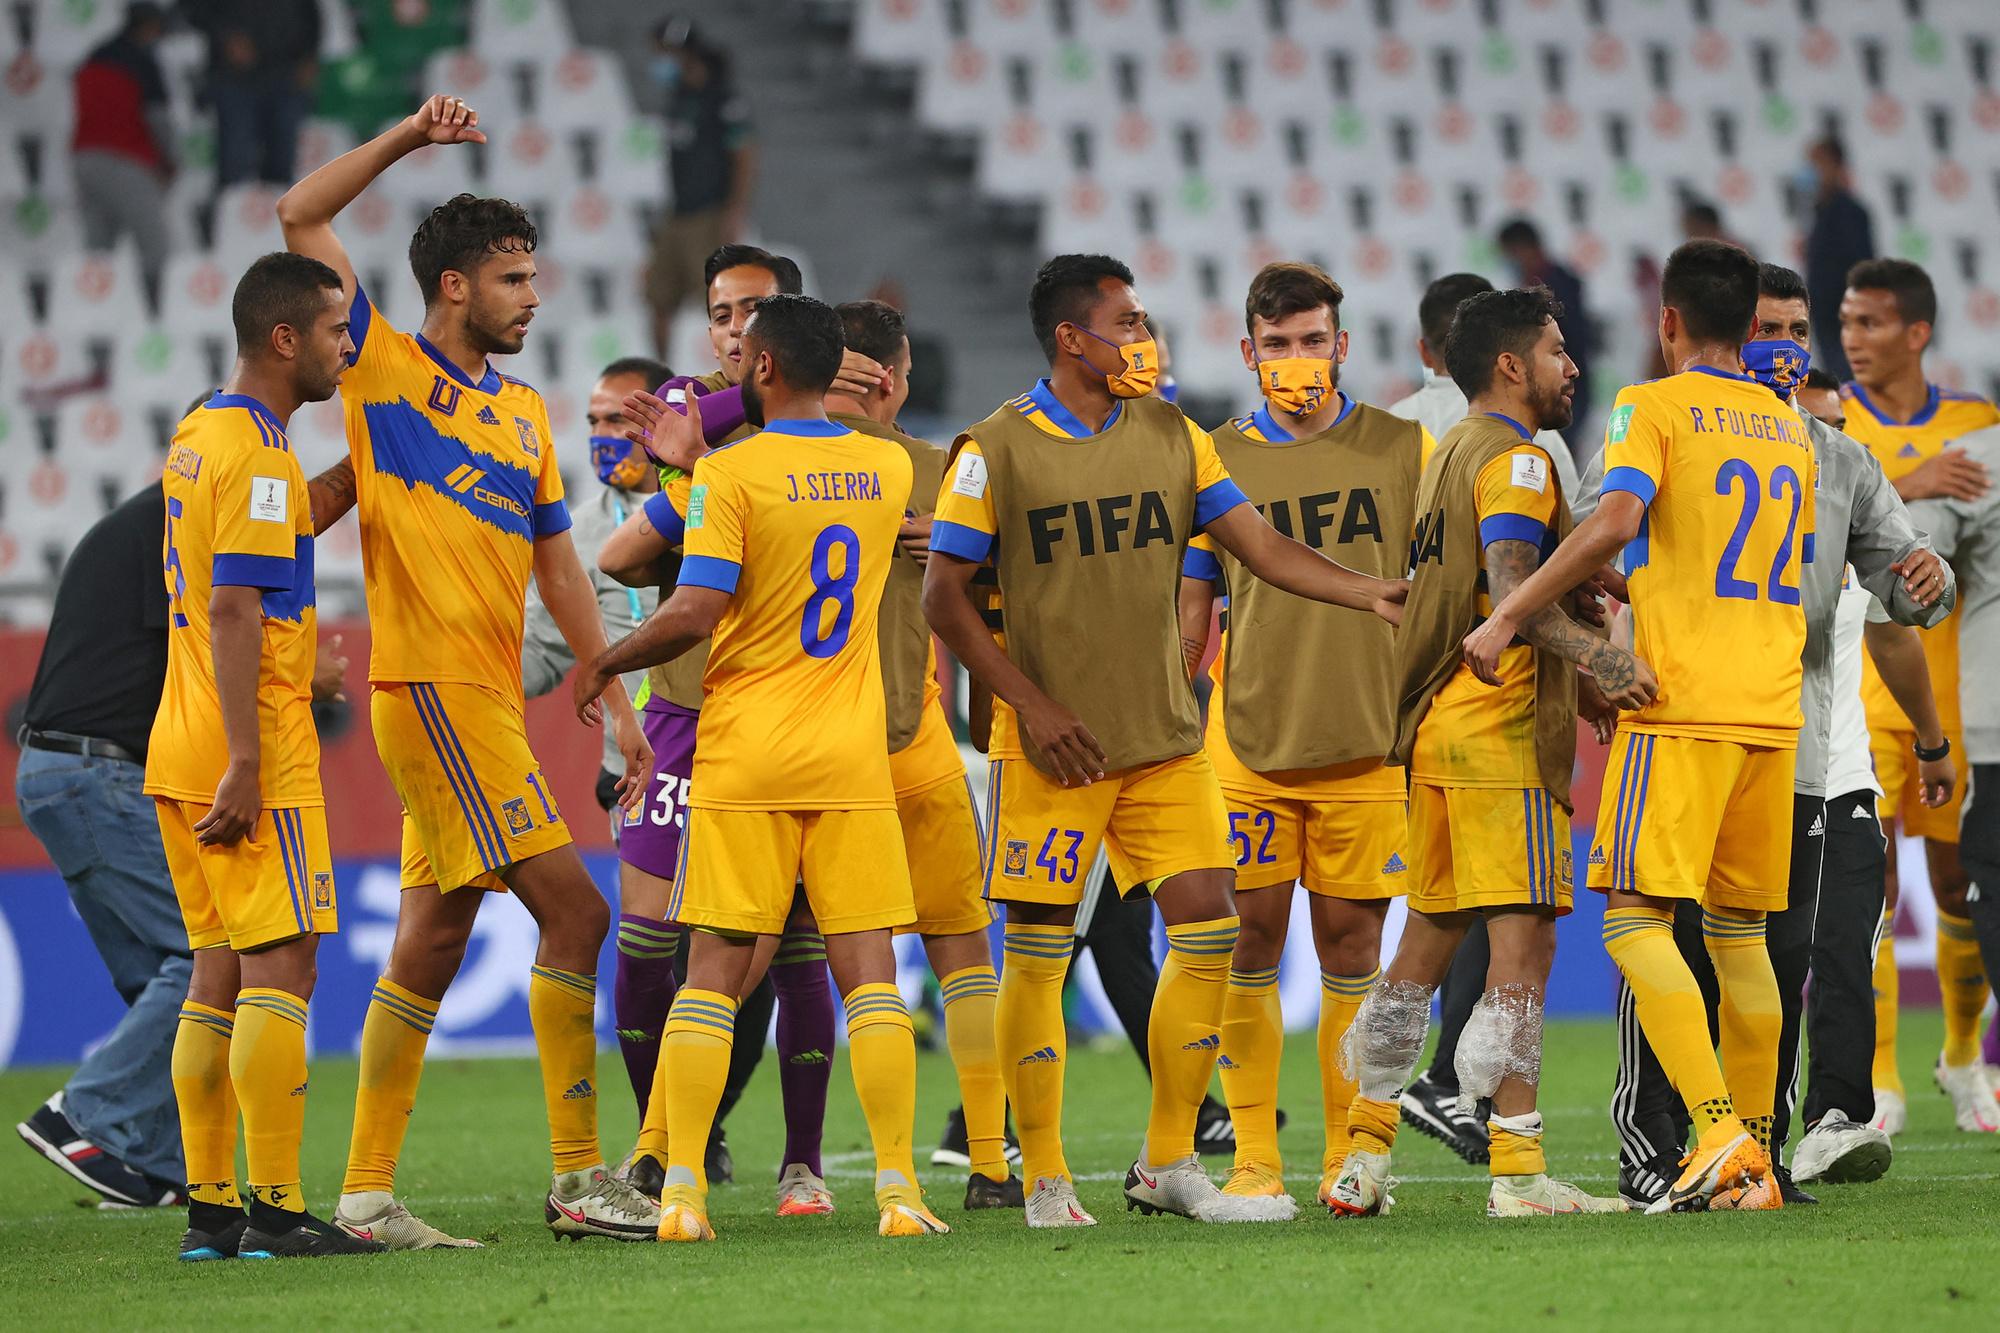 Tigres is de eerste club uit de CONCACAF die in de finale van het WK voor Clubs staat